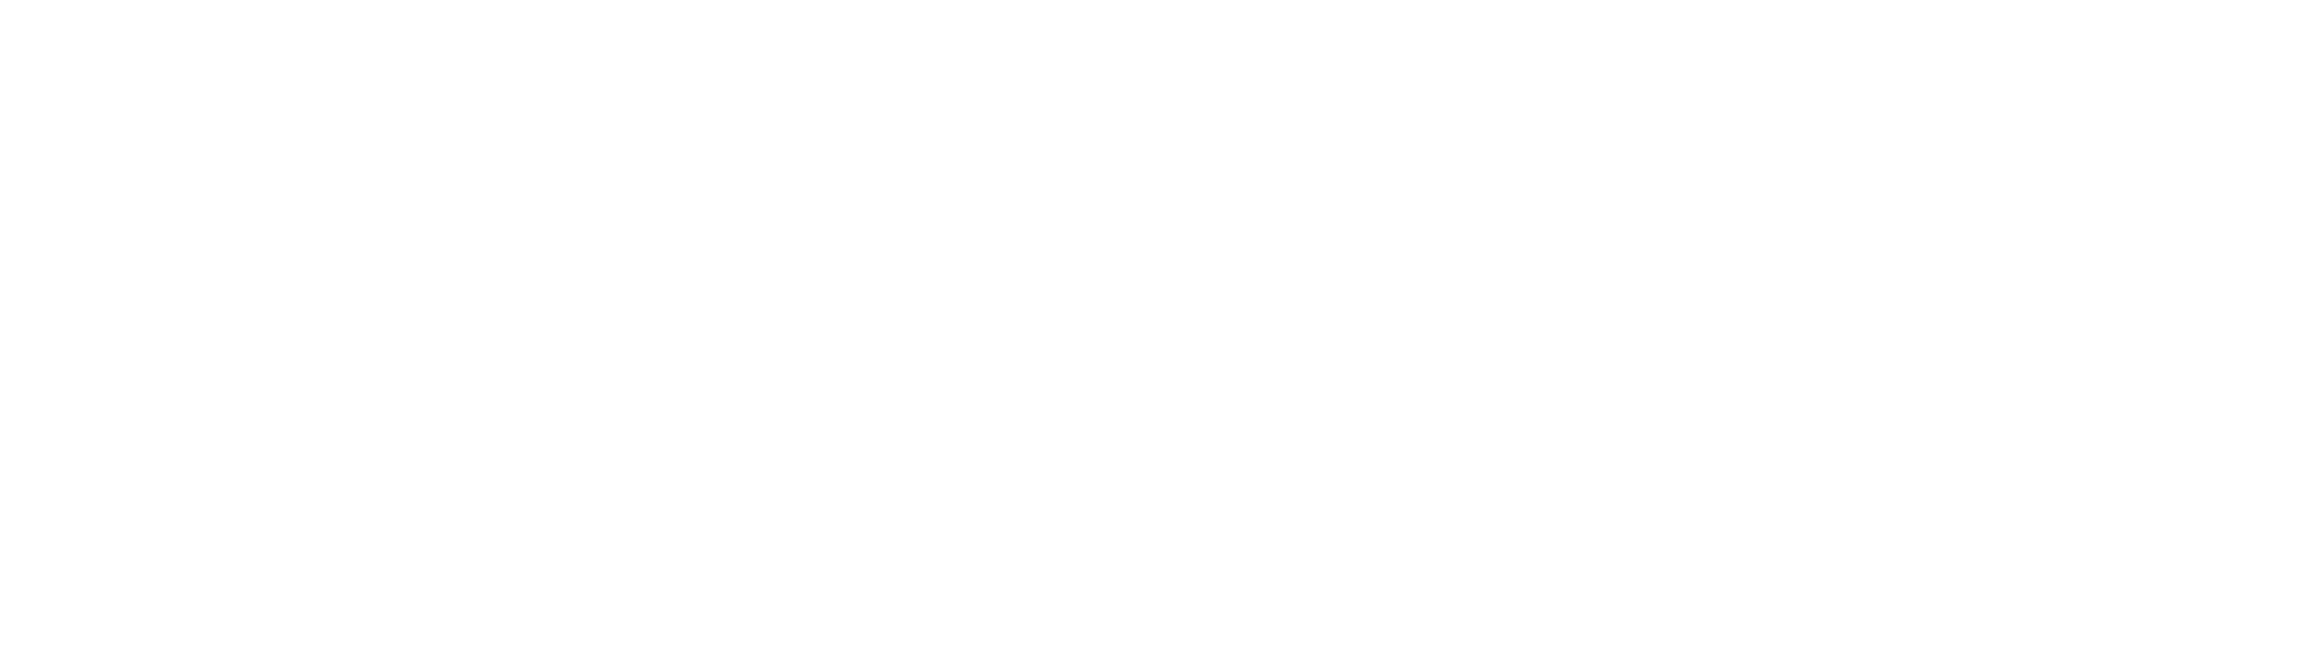 l'opera international magazine